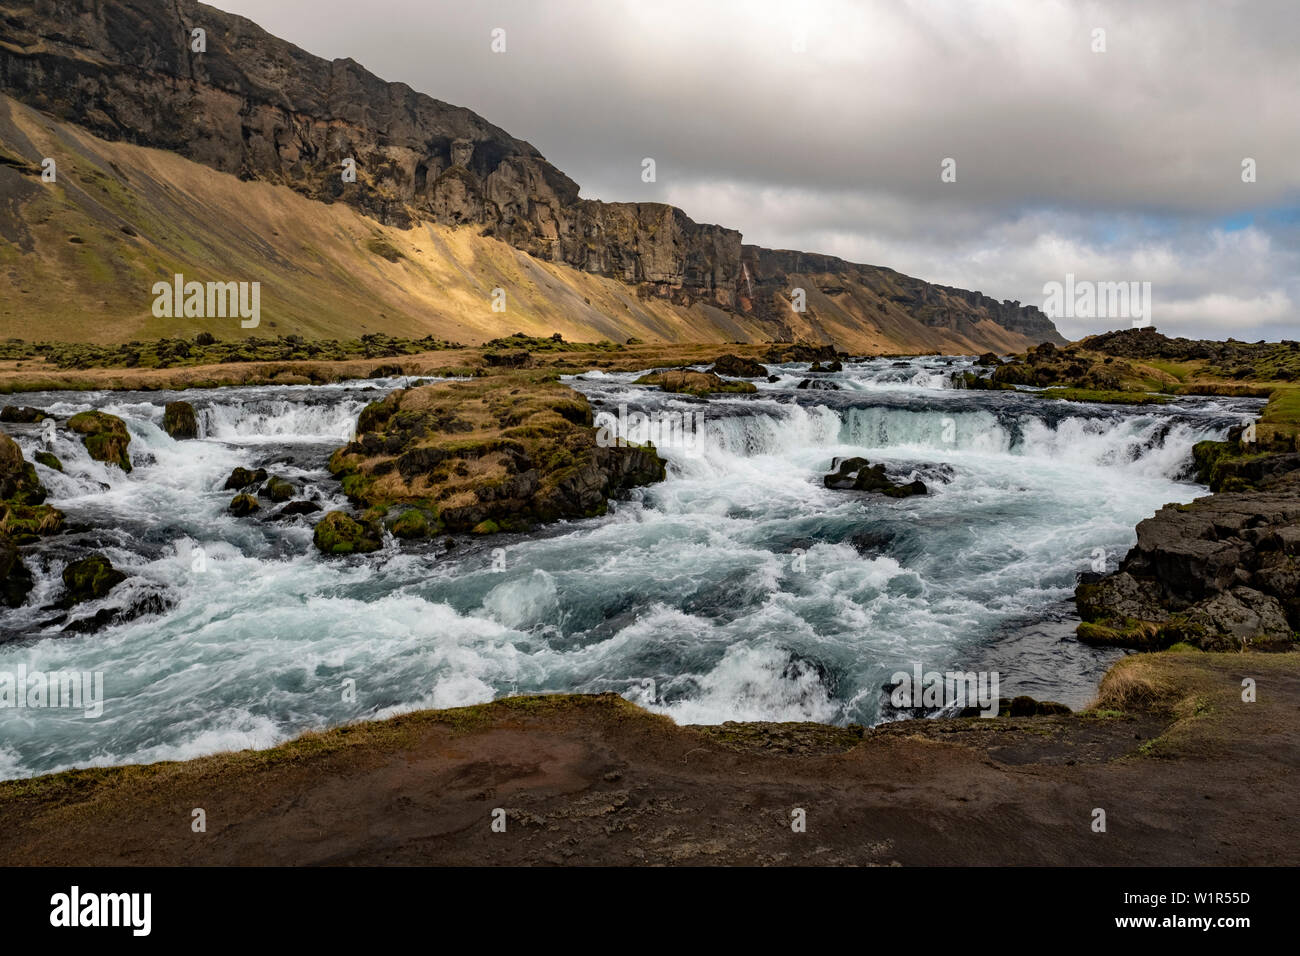 Río torrentoso, cascadas y paisaje accidentado de la costa sureste de Islandia a finales de primavera. Foto de stock